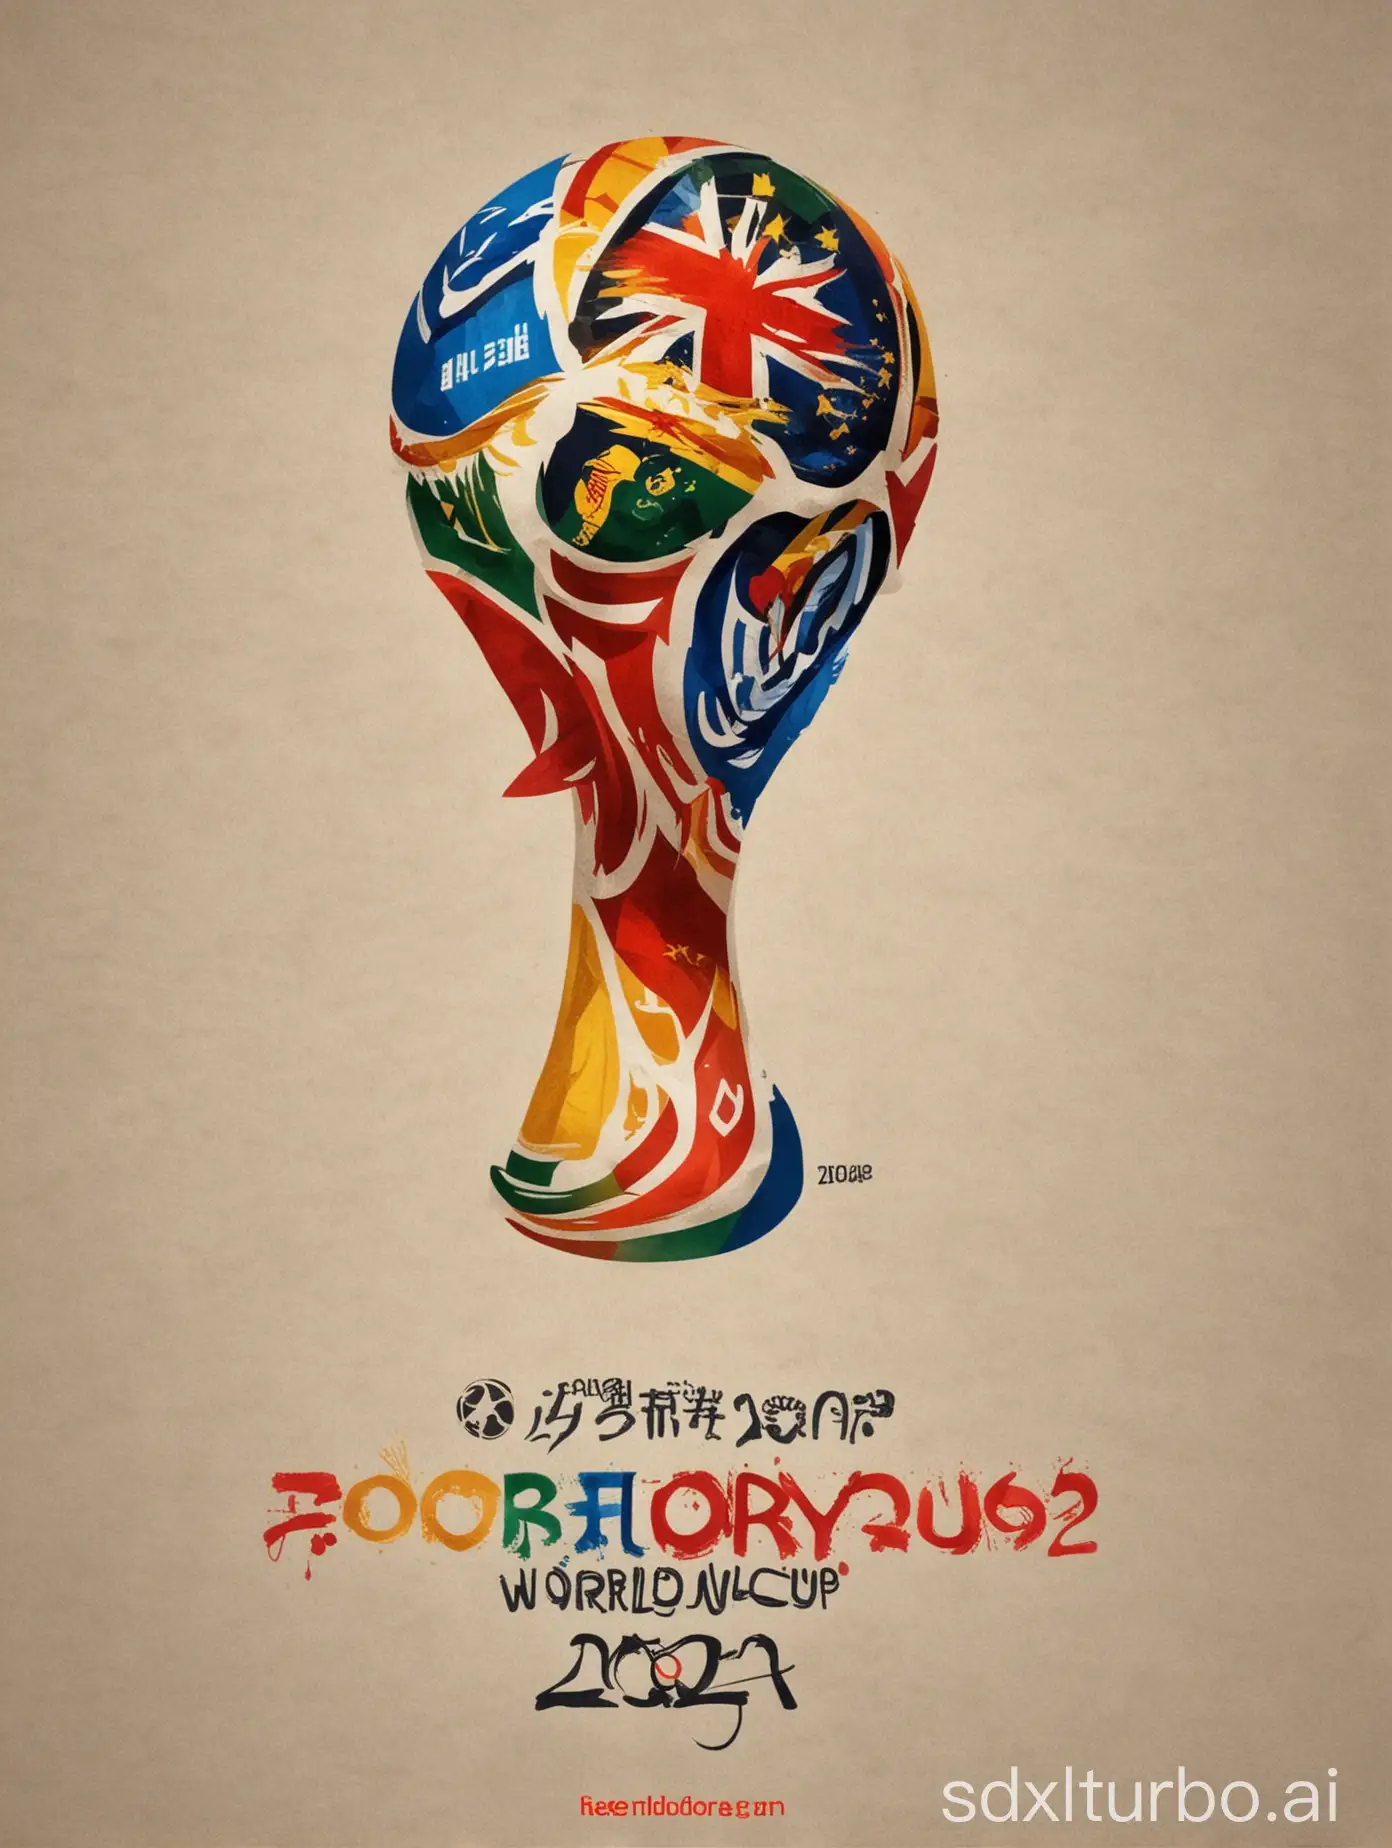 Mach mir ein Plakat zur Fussball WM 2024 in Deutschland

